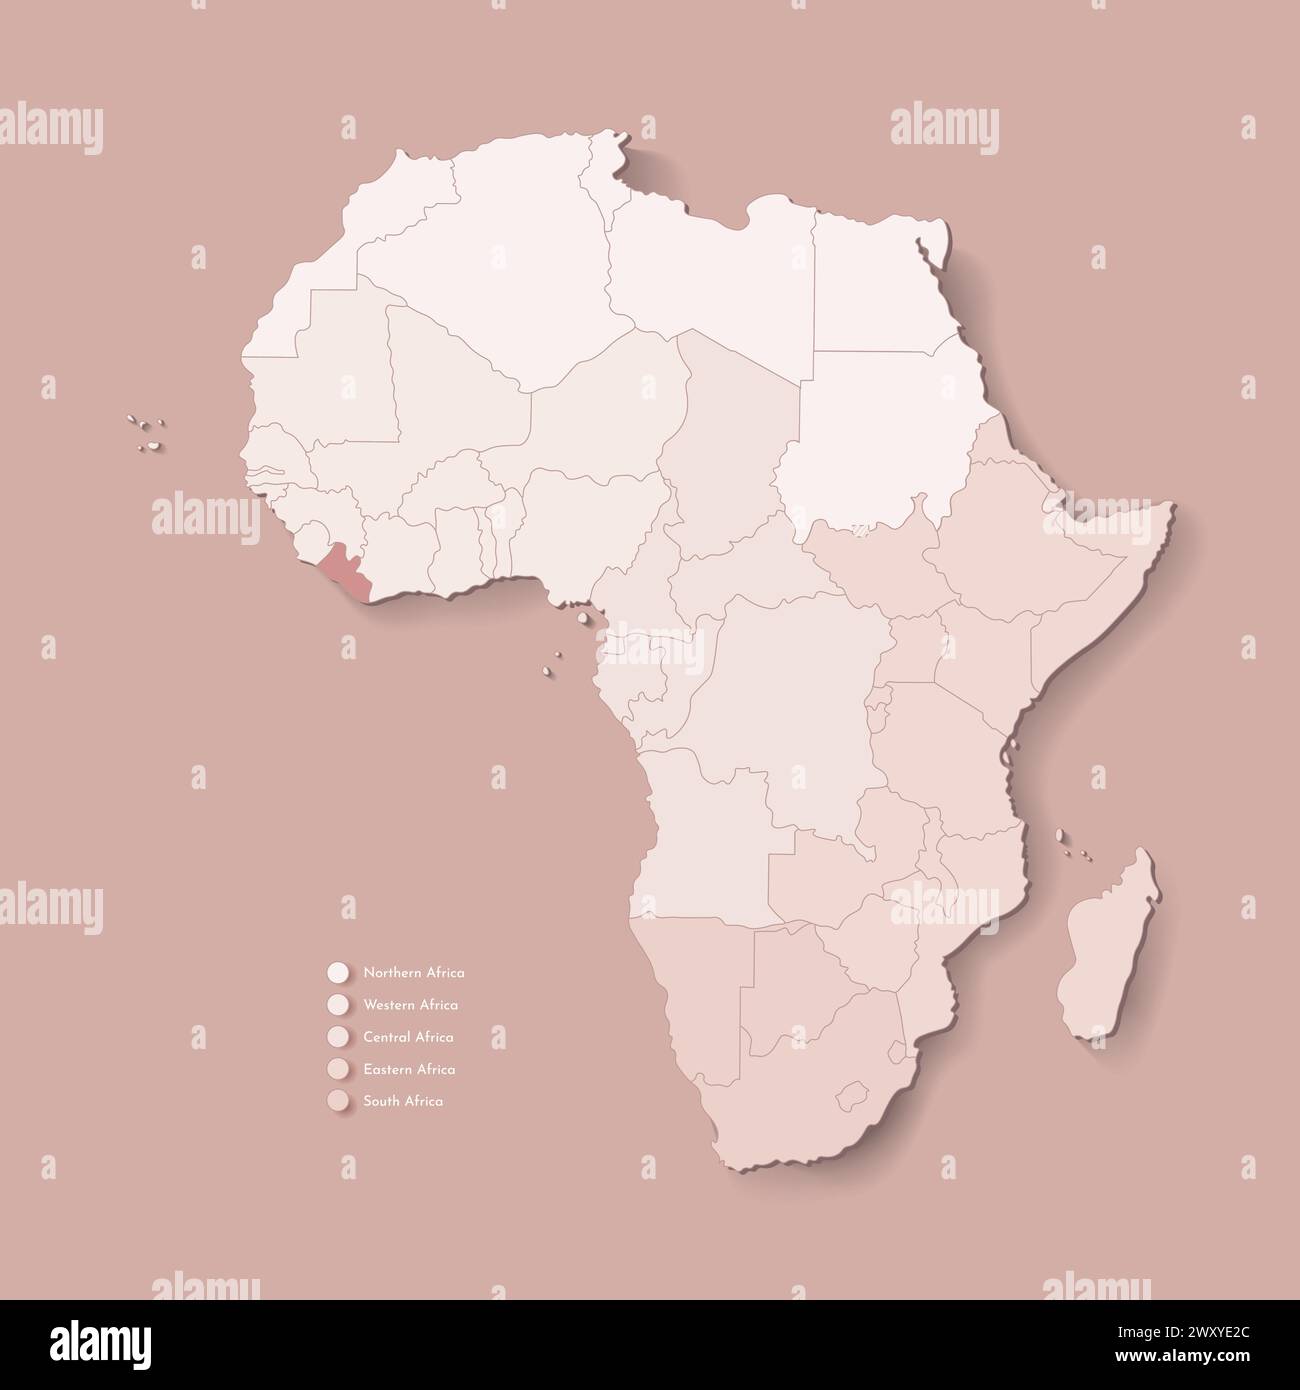 Illustrazione vettoriale con continente africano con confini di tutti gli stati e paese segnato Liberia. Mappa politica in colori marroni con occidentale, sud AN Illustrazione Vettoriale